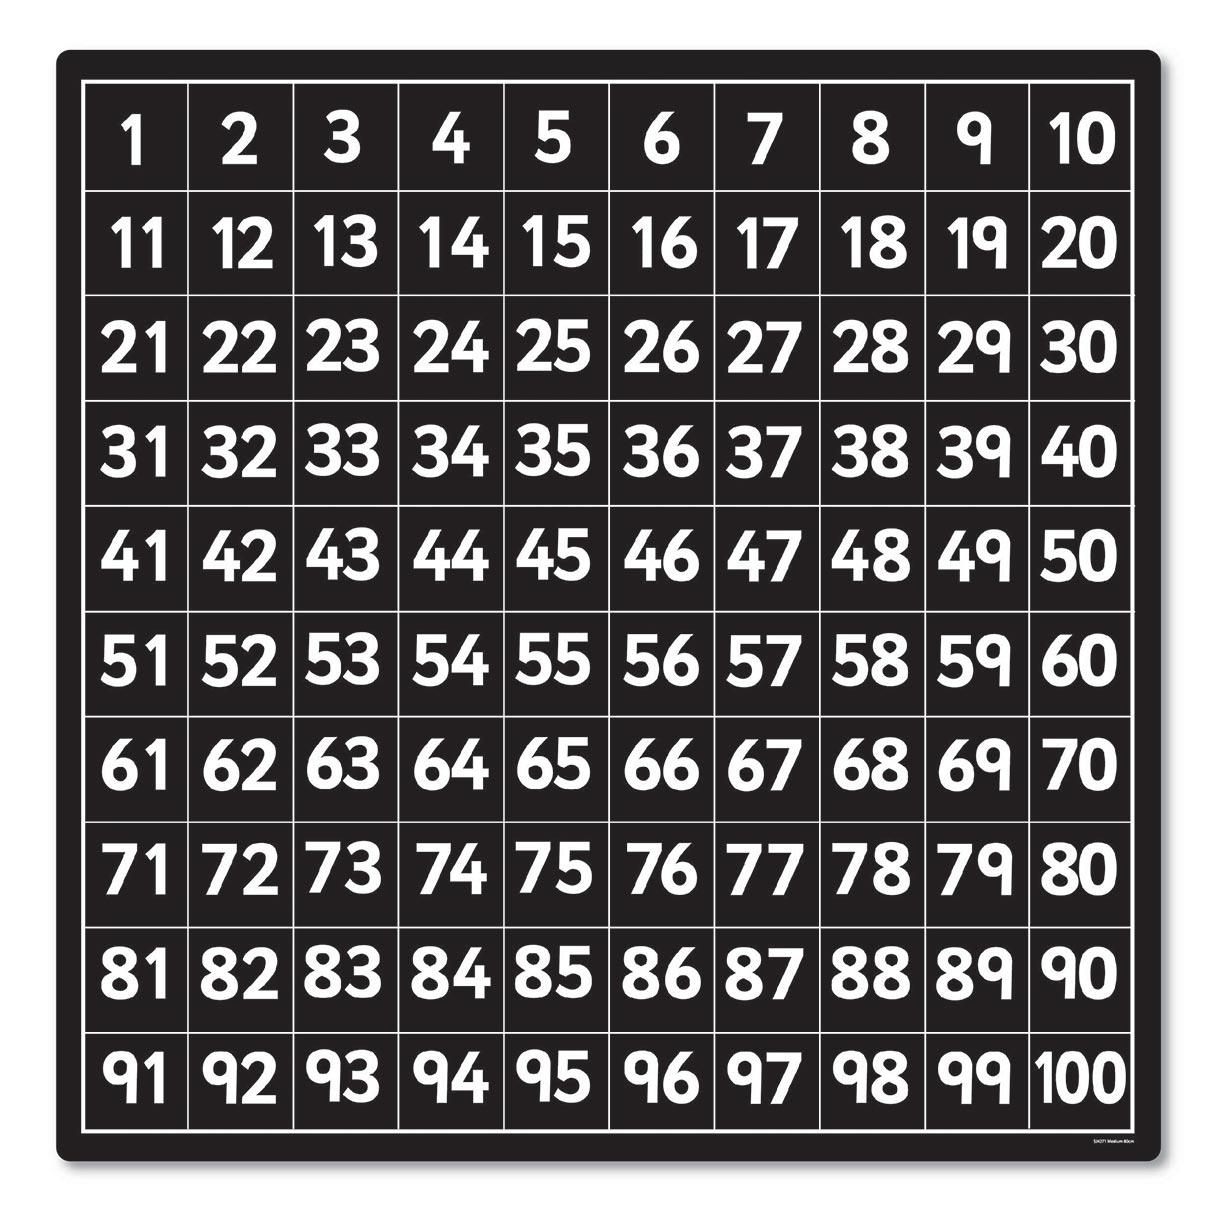 number-grids